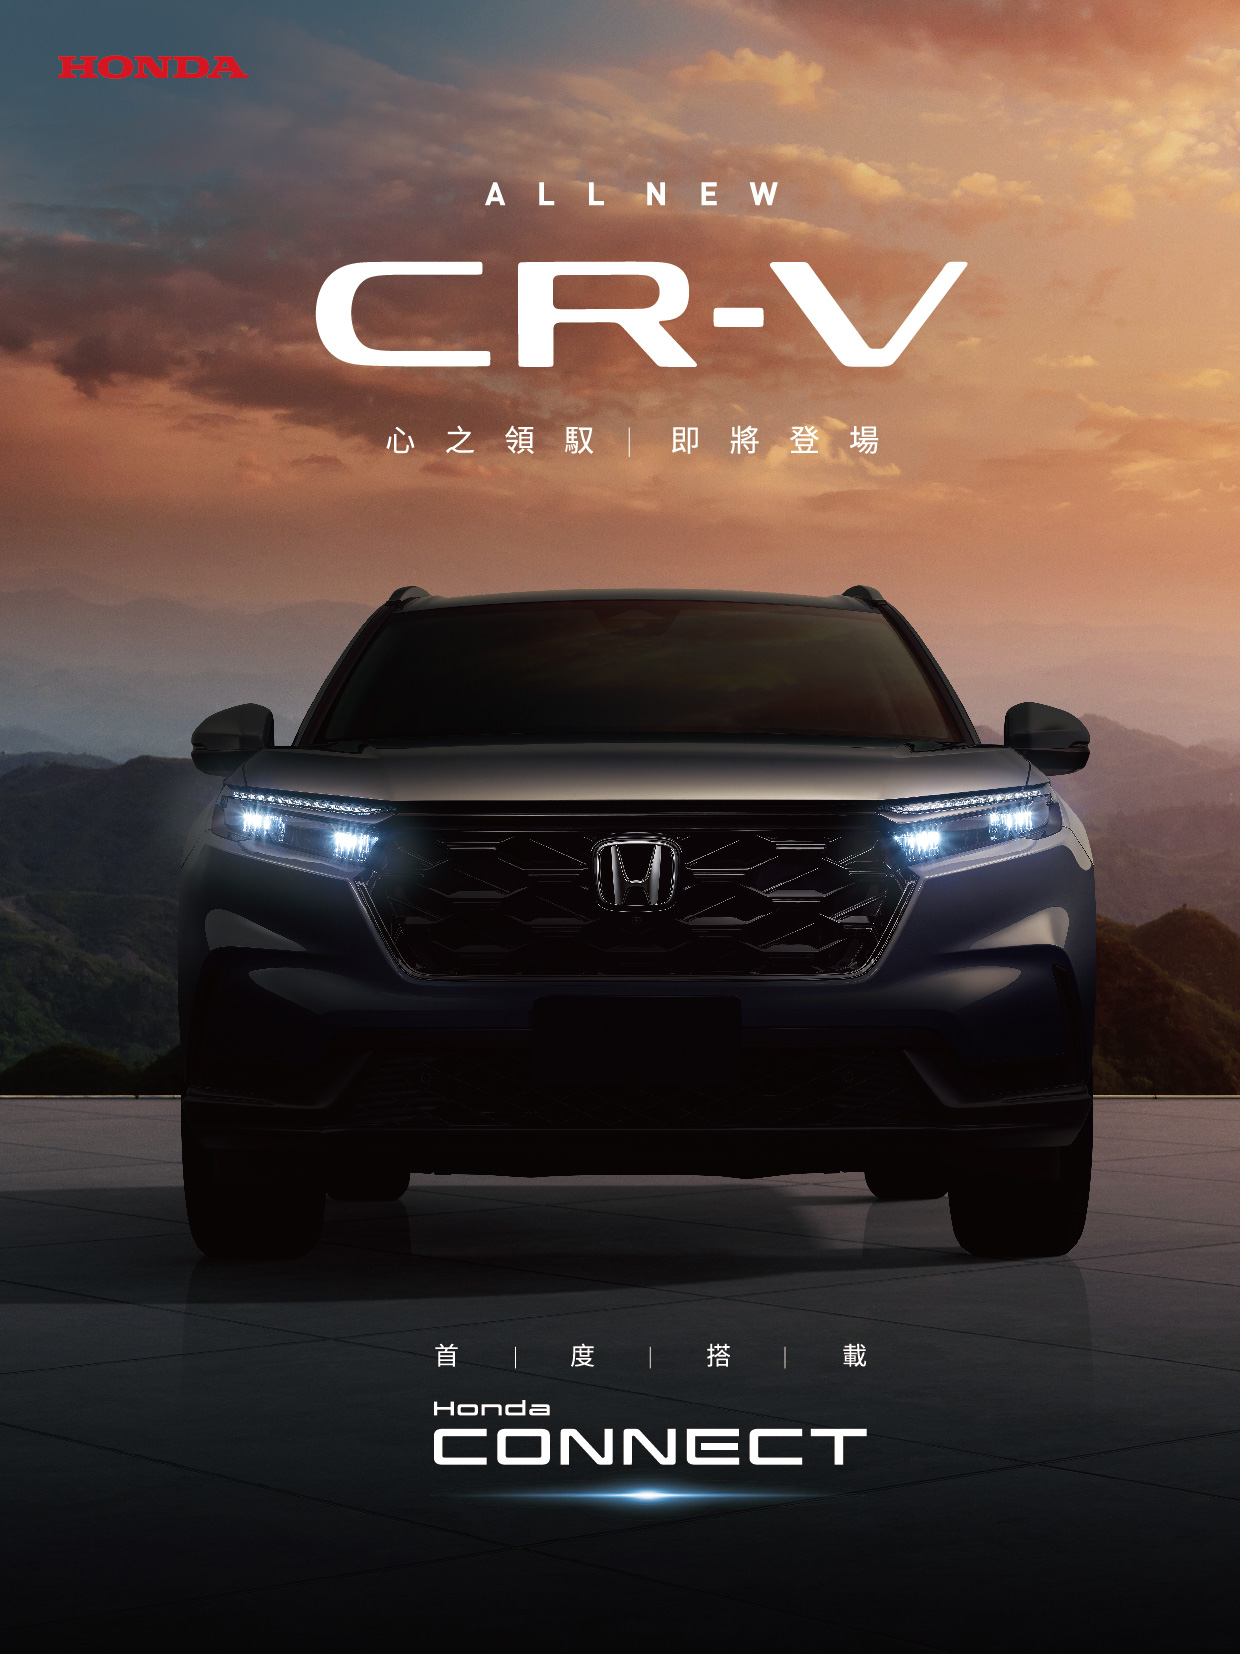 全新世代CR-V優雅自信旅程即將啟航首度搭載Honda CONNECT  8月嶄新登場